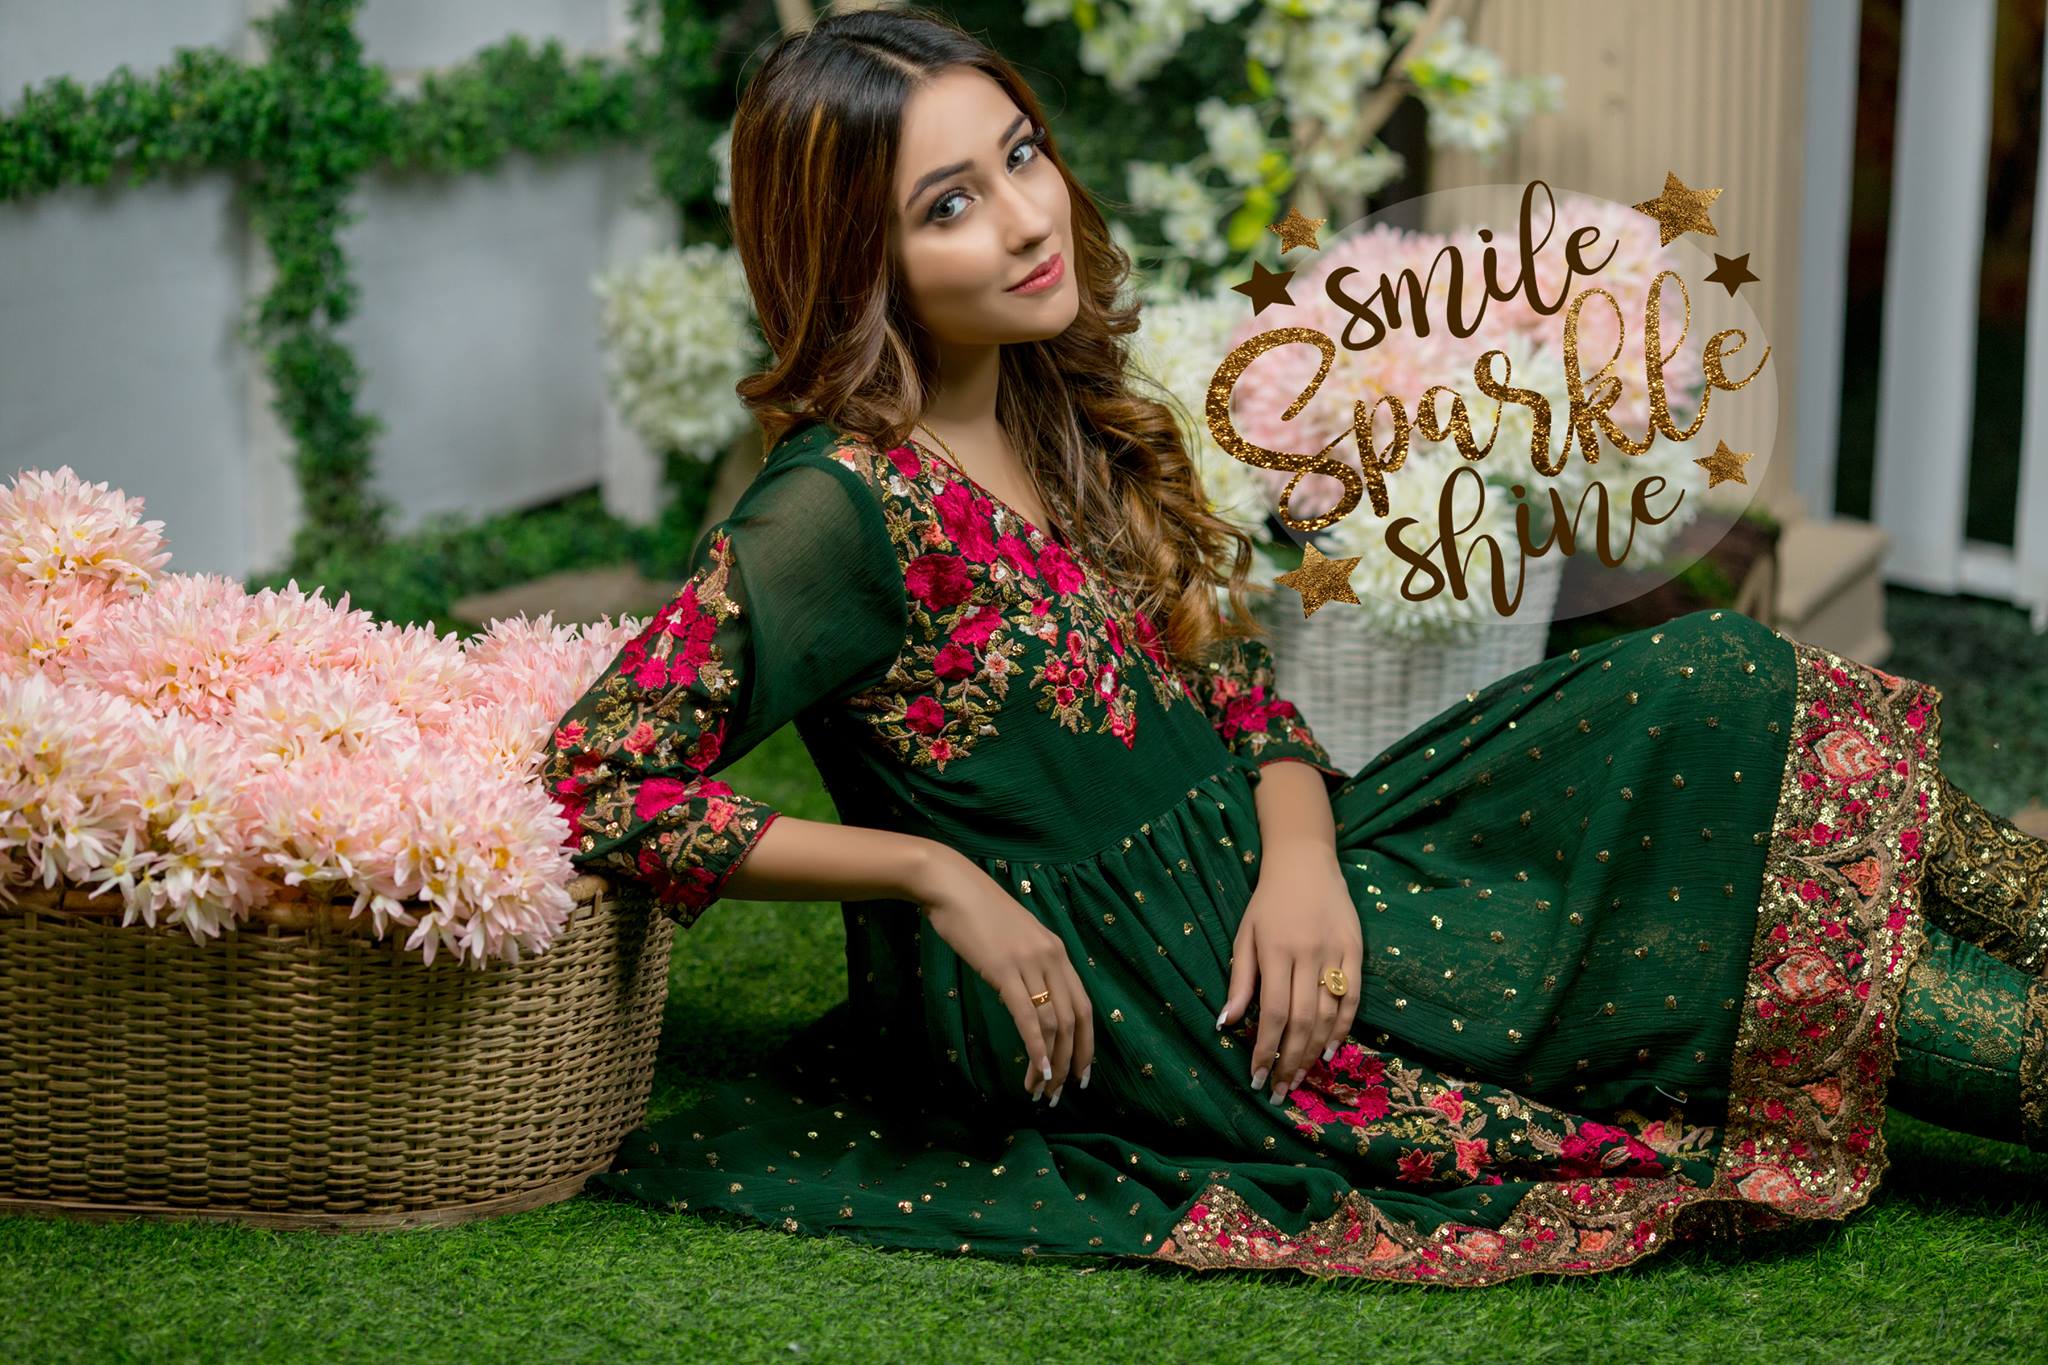 Pakistani Designers Eid Dresses 